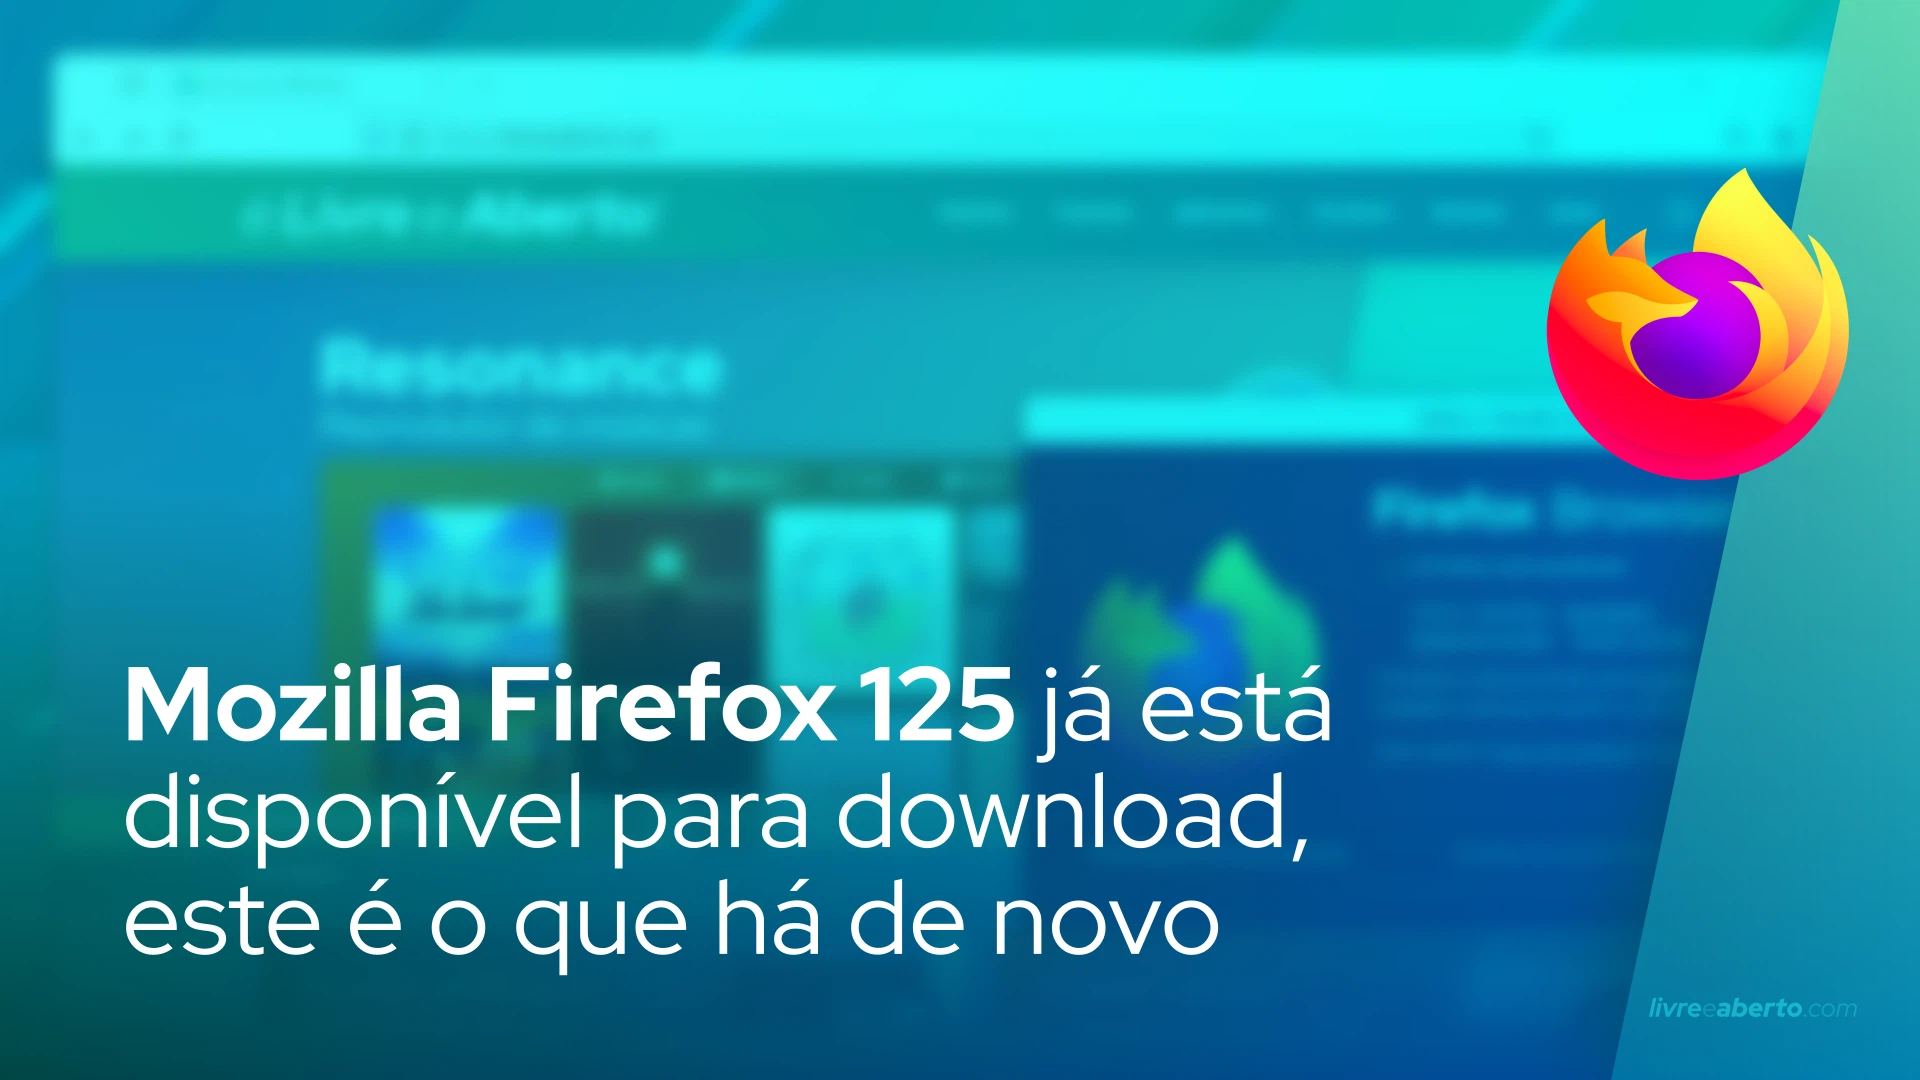 Mozilla Firefox 125 já está disponível para download, este é o que há de novo